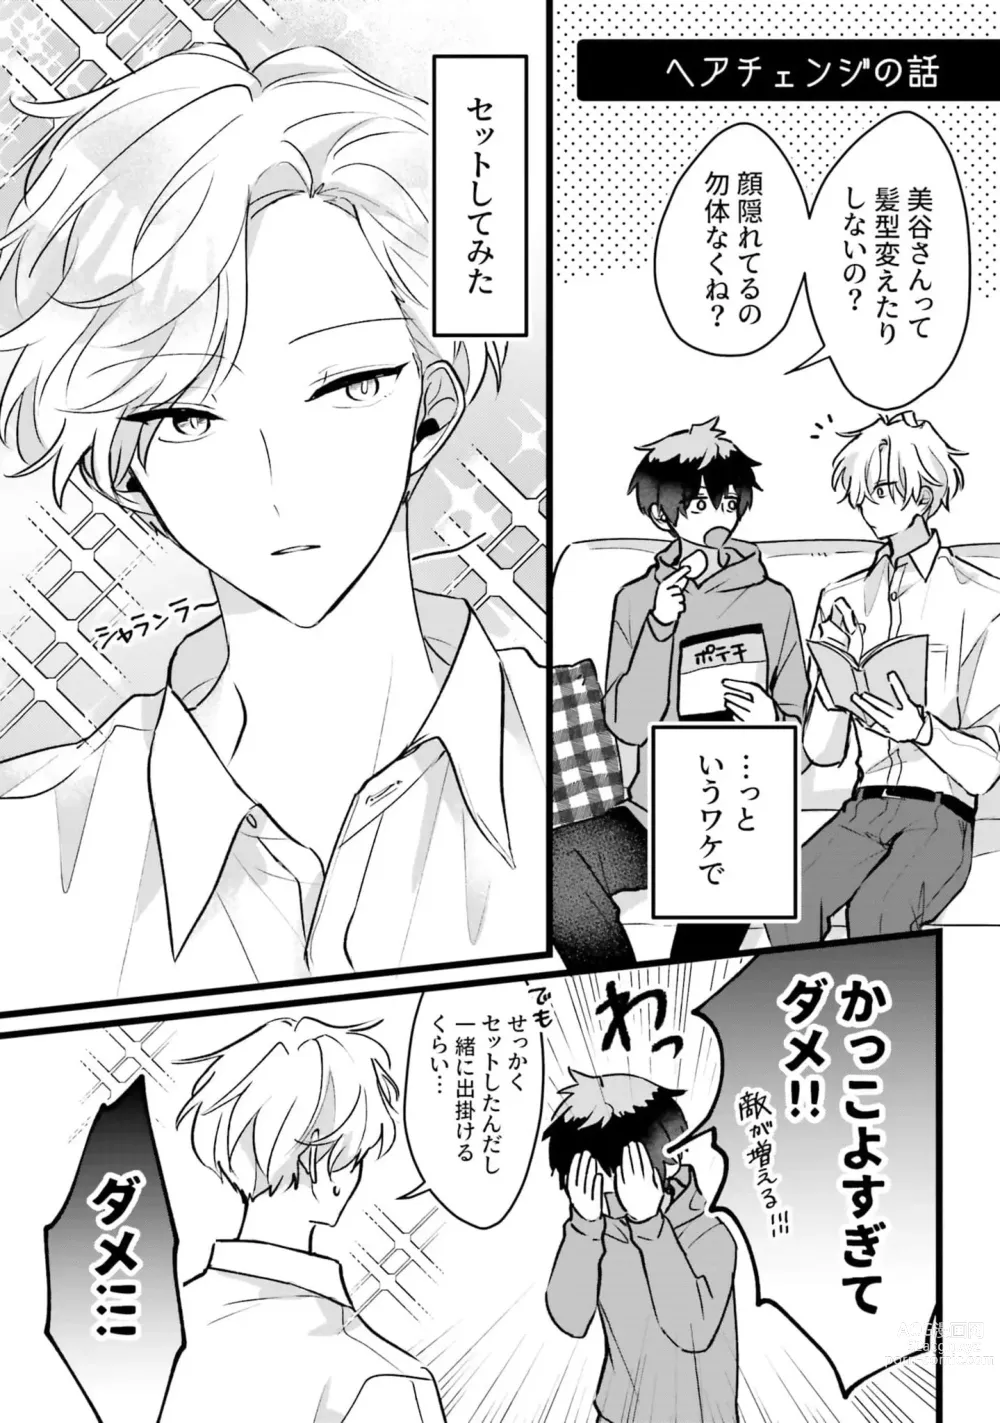 Page 170 of manga Shishunki ni wa Me no Doku desu